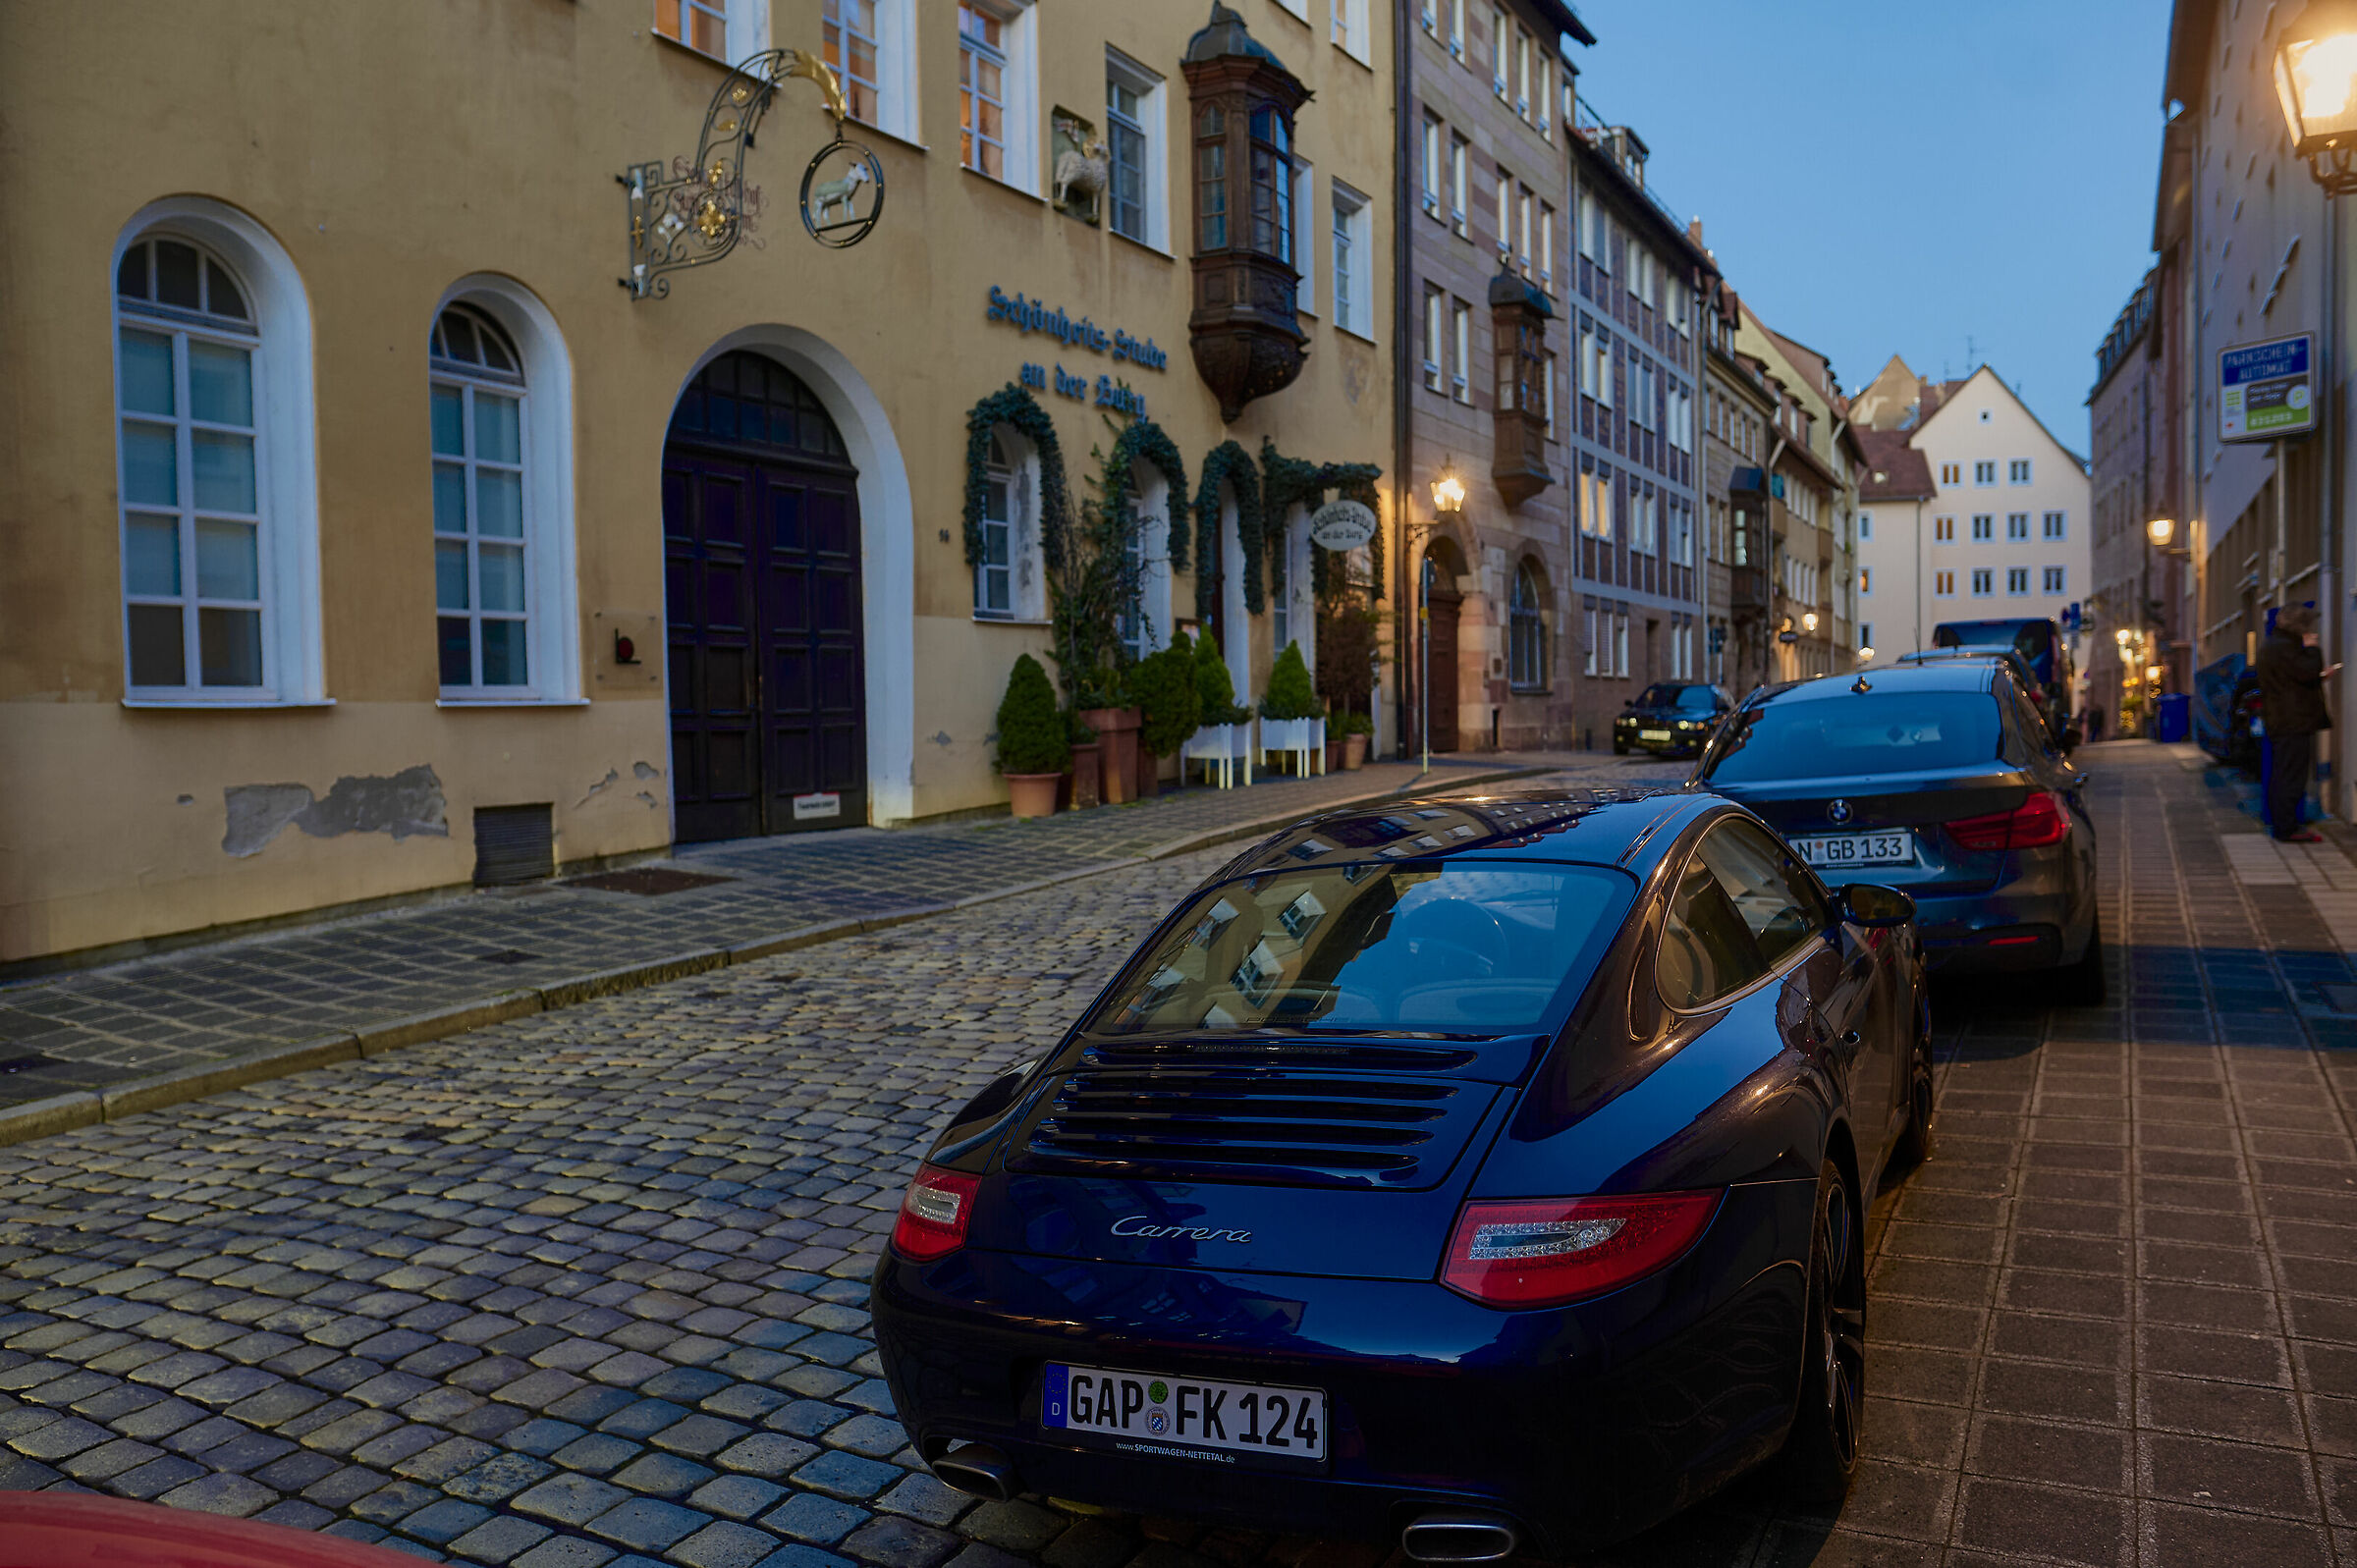 La fortuna è trovare parcheggio nel centro storico di Norimberga...